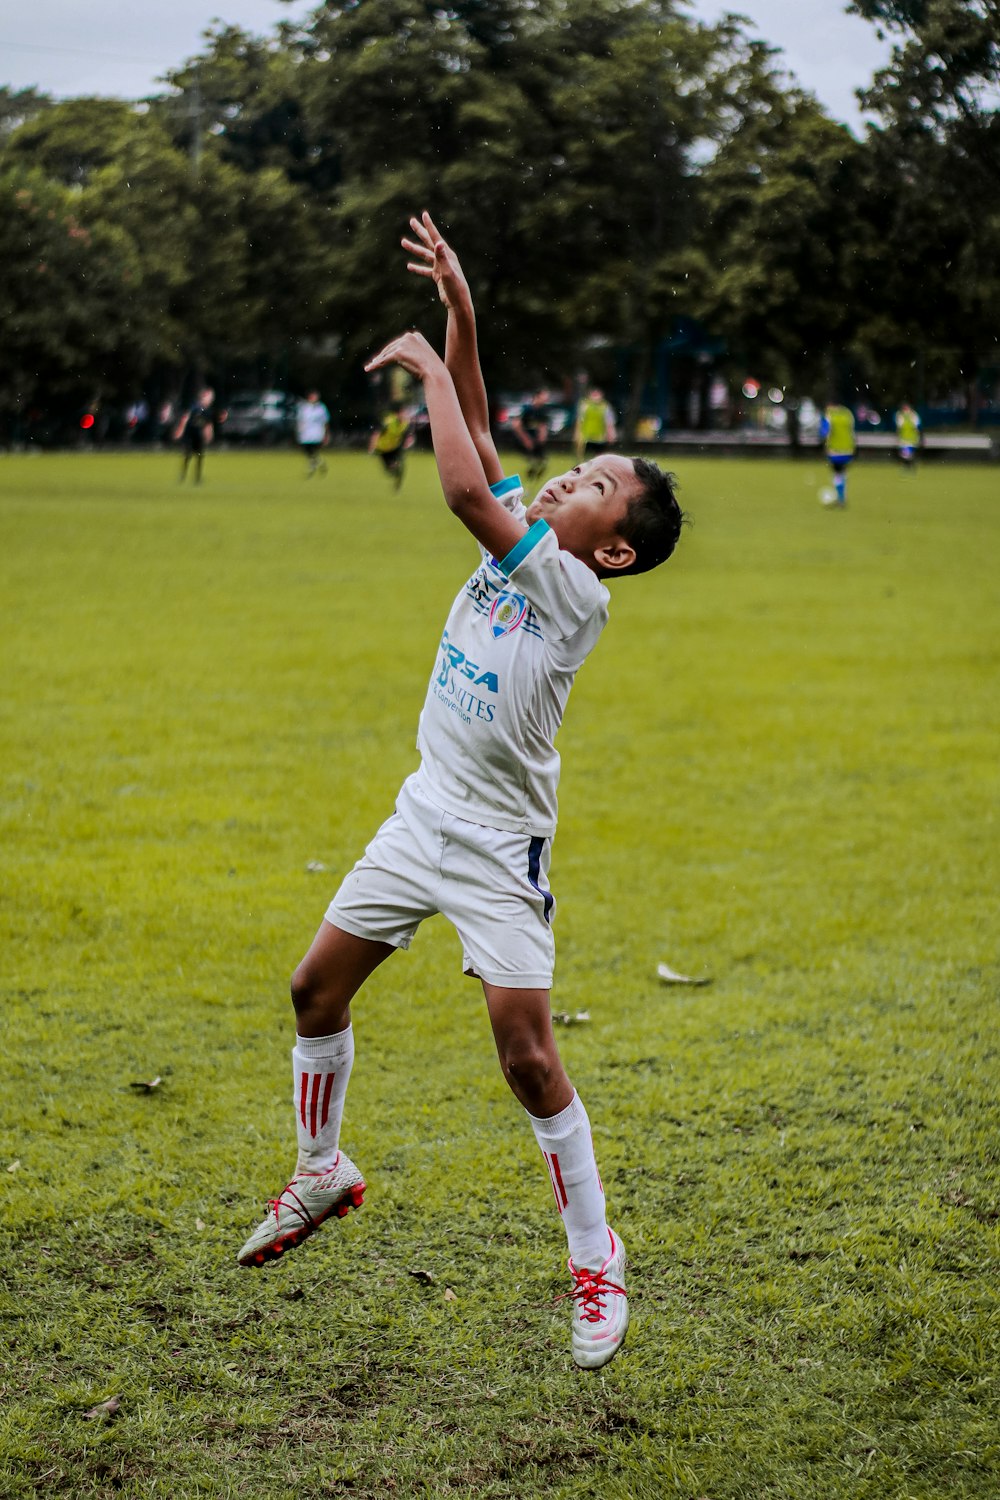 하얀 축구 유니폼을 입은 남자가 낮 동안 푸른 잔디밭에서 축구공을 차고 있다